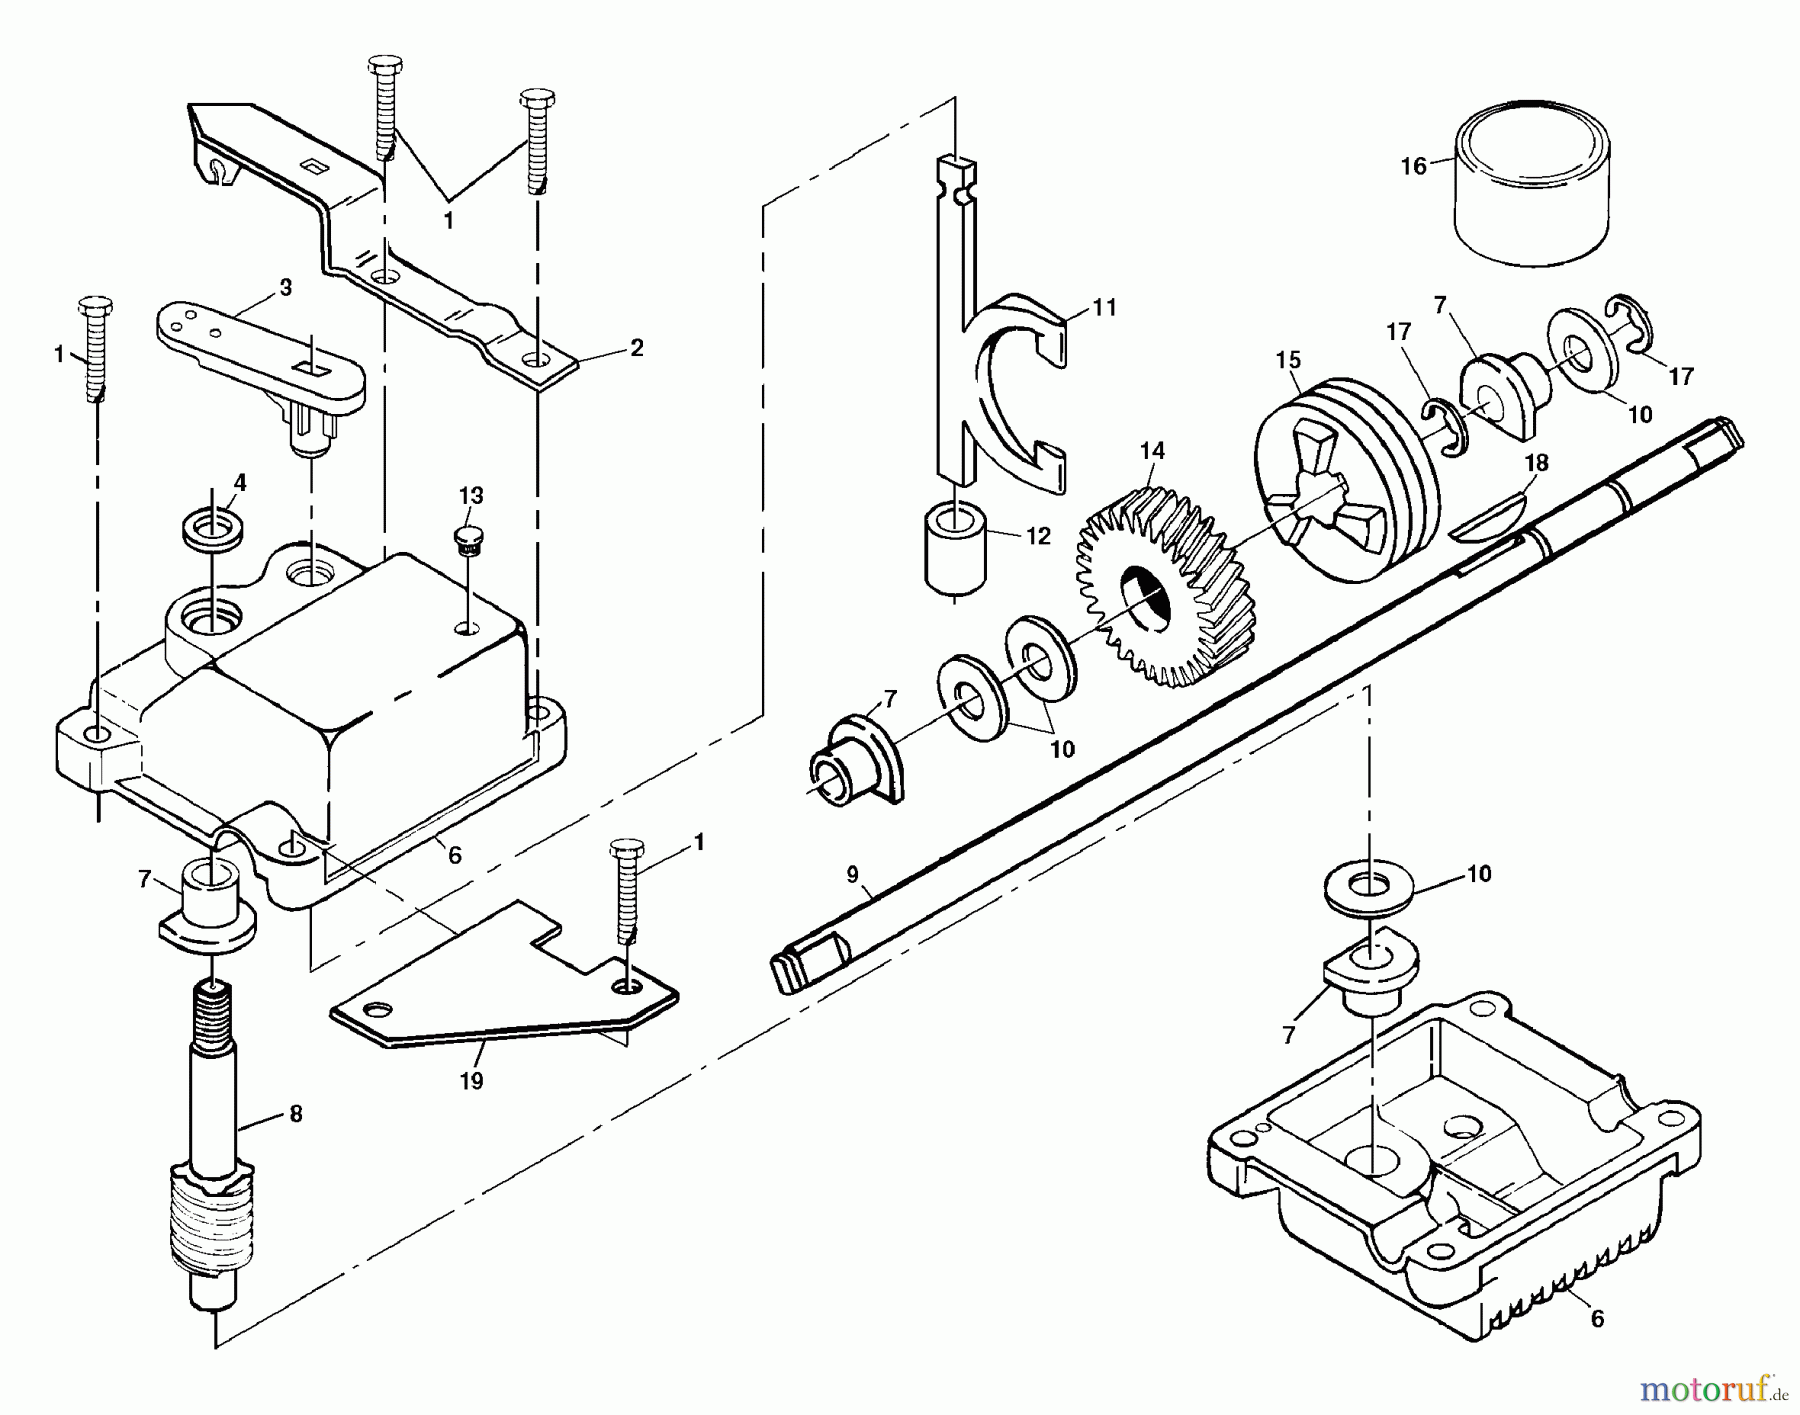  Husqvarna Rasenmäher 6522 SHC (954222718) - Husqvarna Walk-Behind Mower (2001-11 & After) Gear Case Assembly P/N 532702511